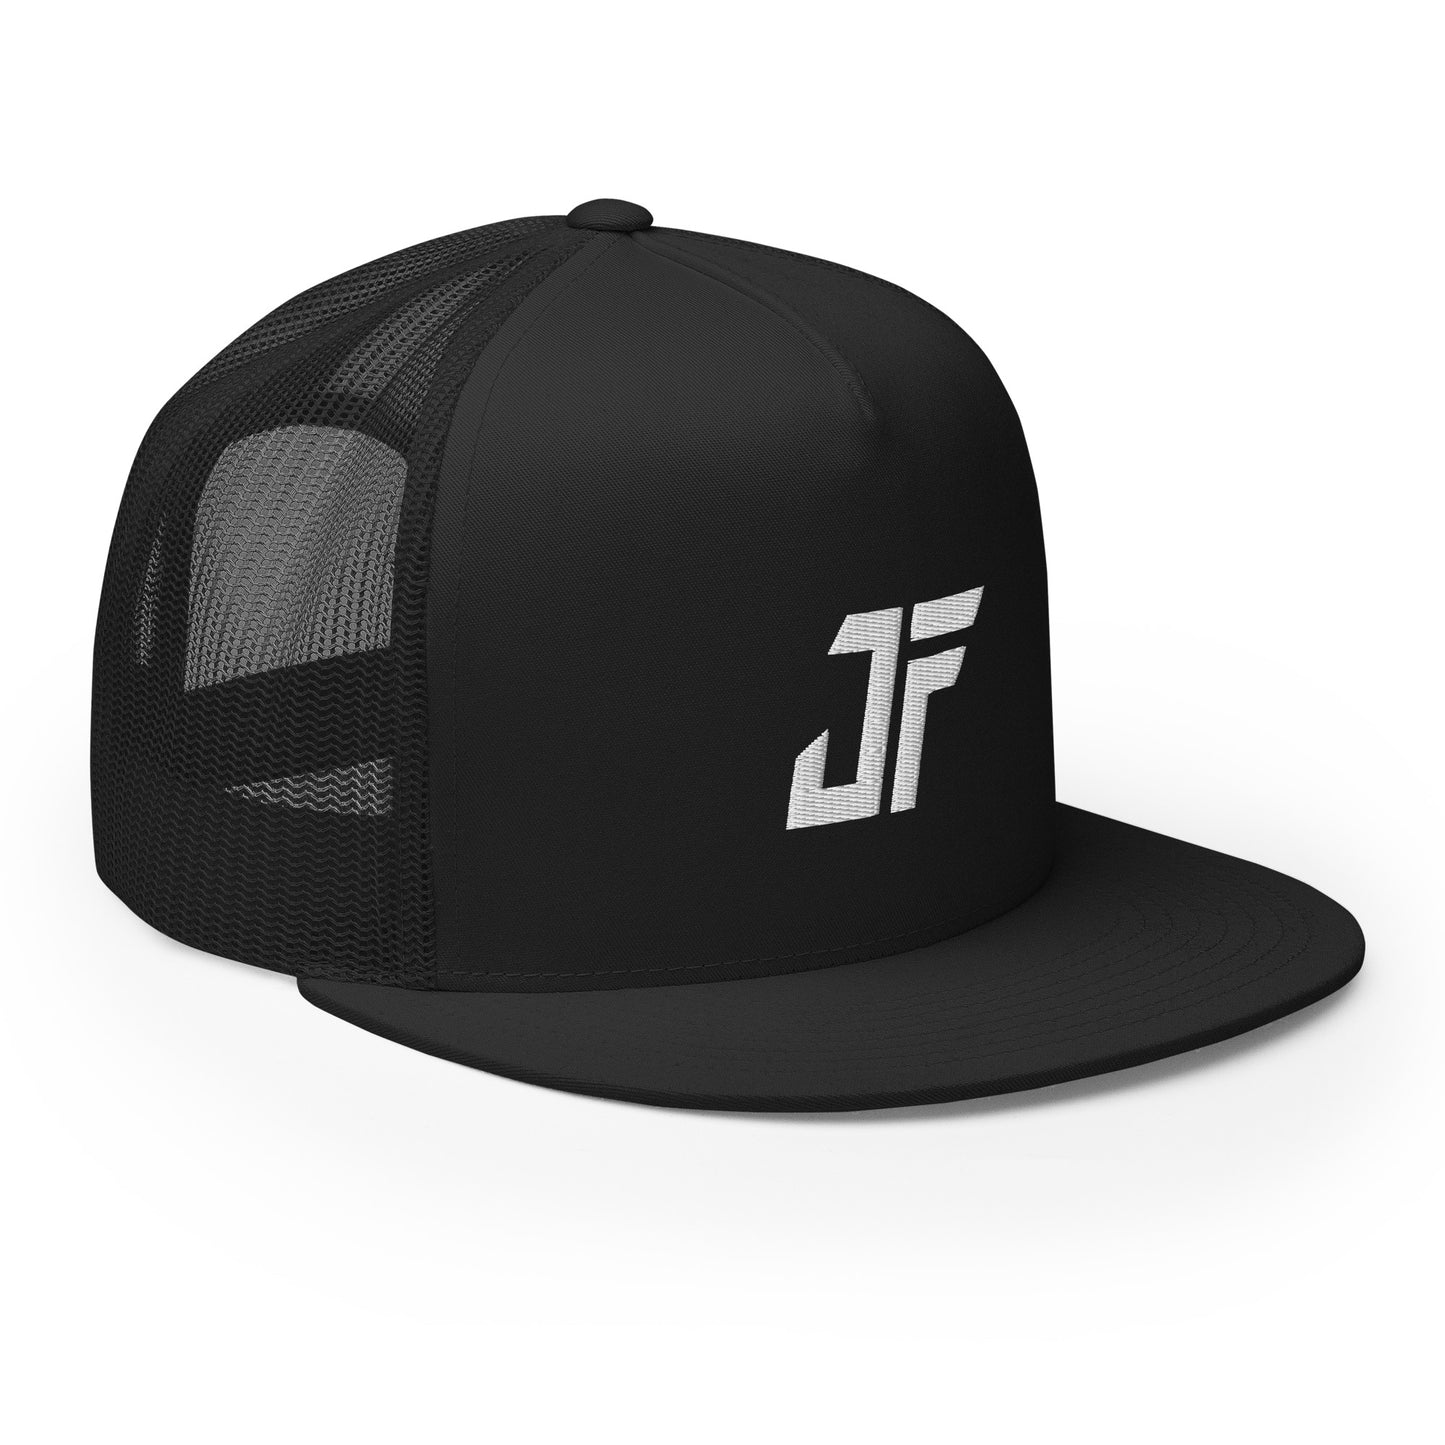 Johnson Fallah "JF" Trucker Cap